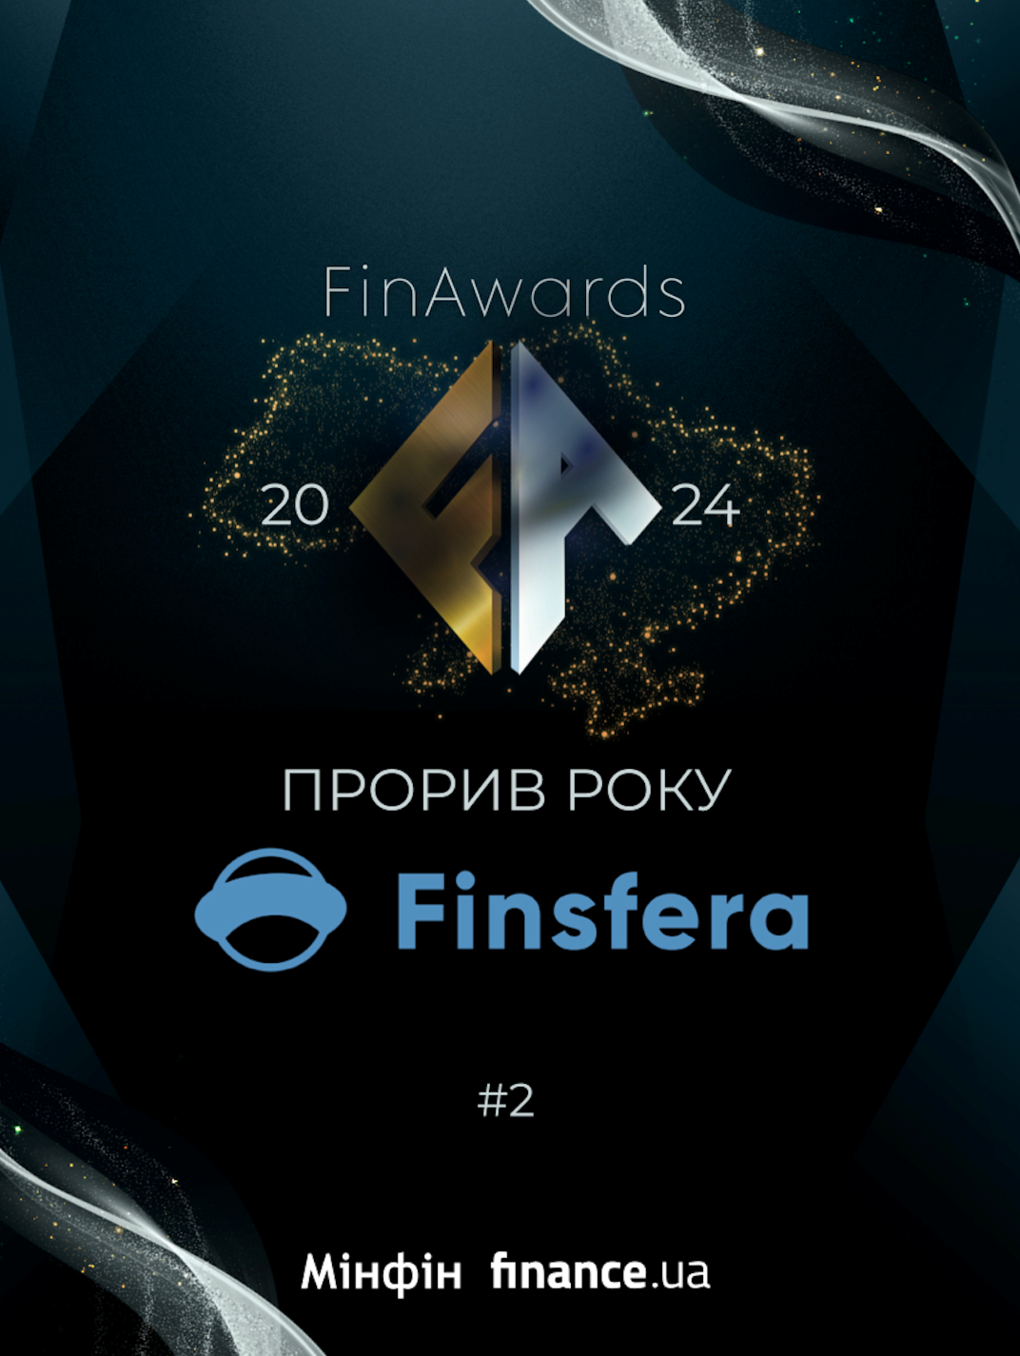 МФО «Finsfera» — победитель в номинации «Прорыв года» на FinAwards 20240